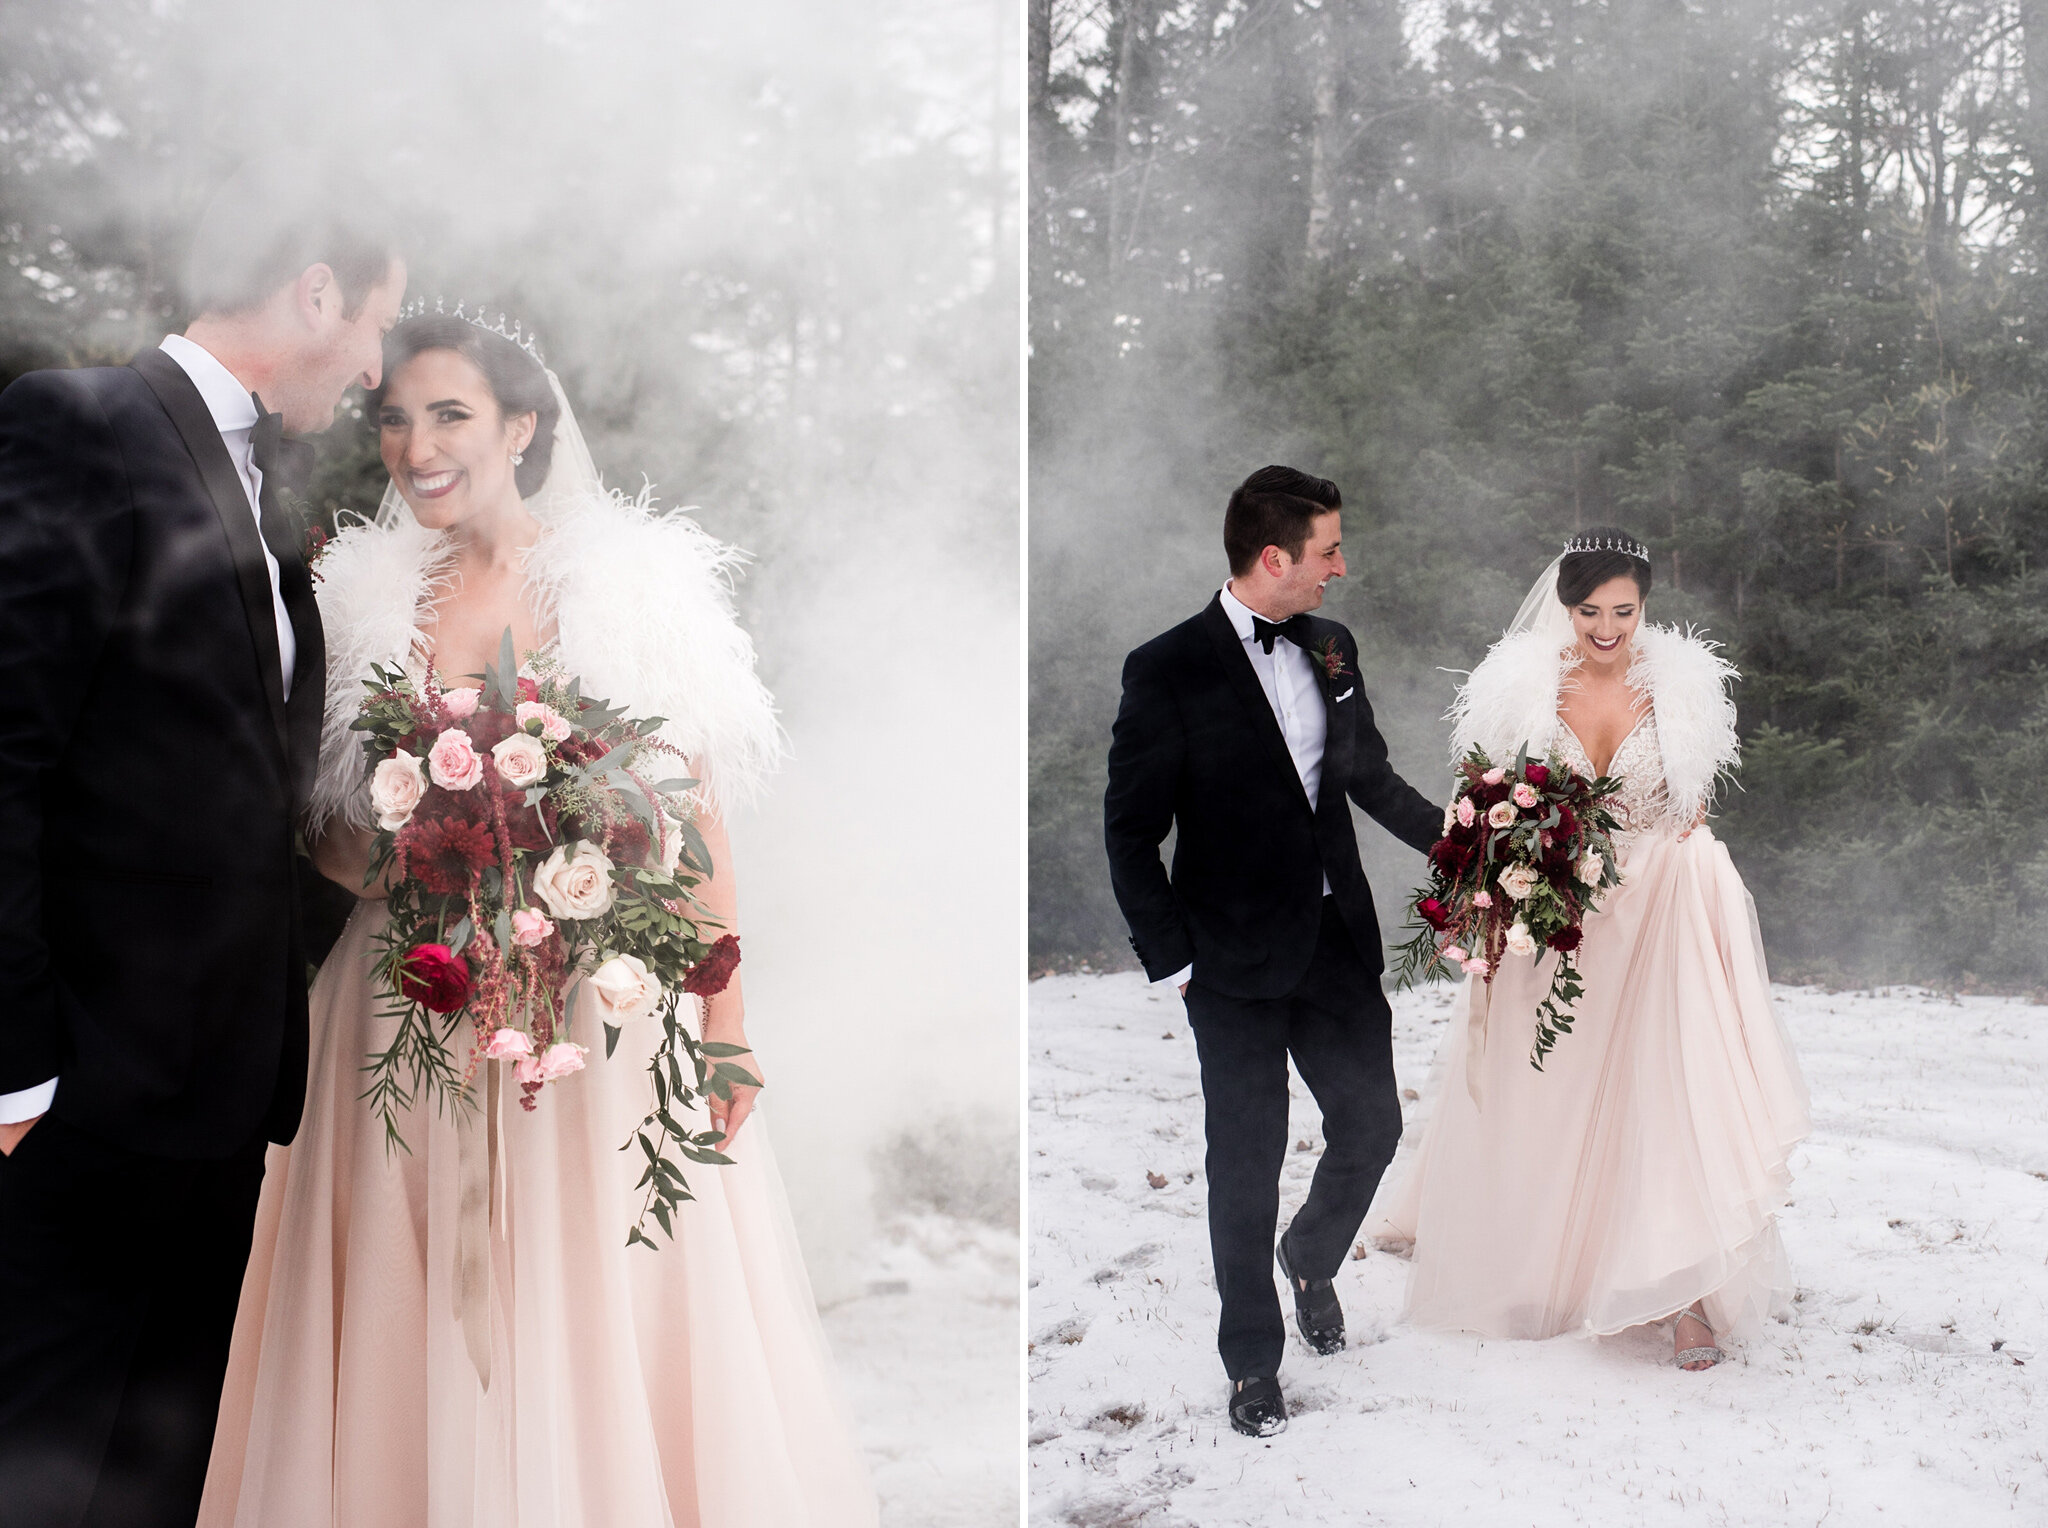 314-smoke-bombs-white-snow-winter-bride-groom-wedding-toronto-ontario-halifax.jpg